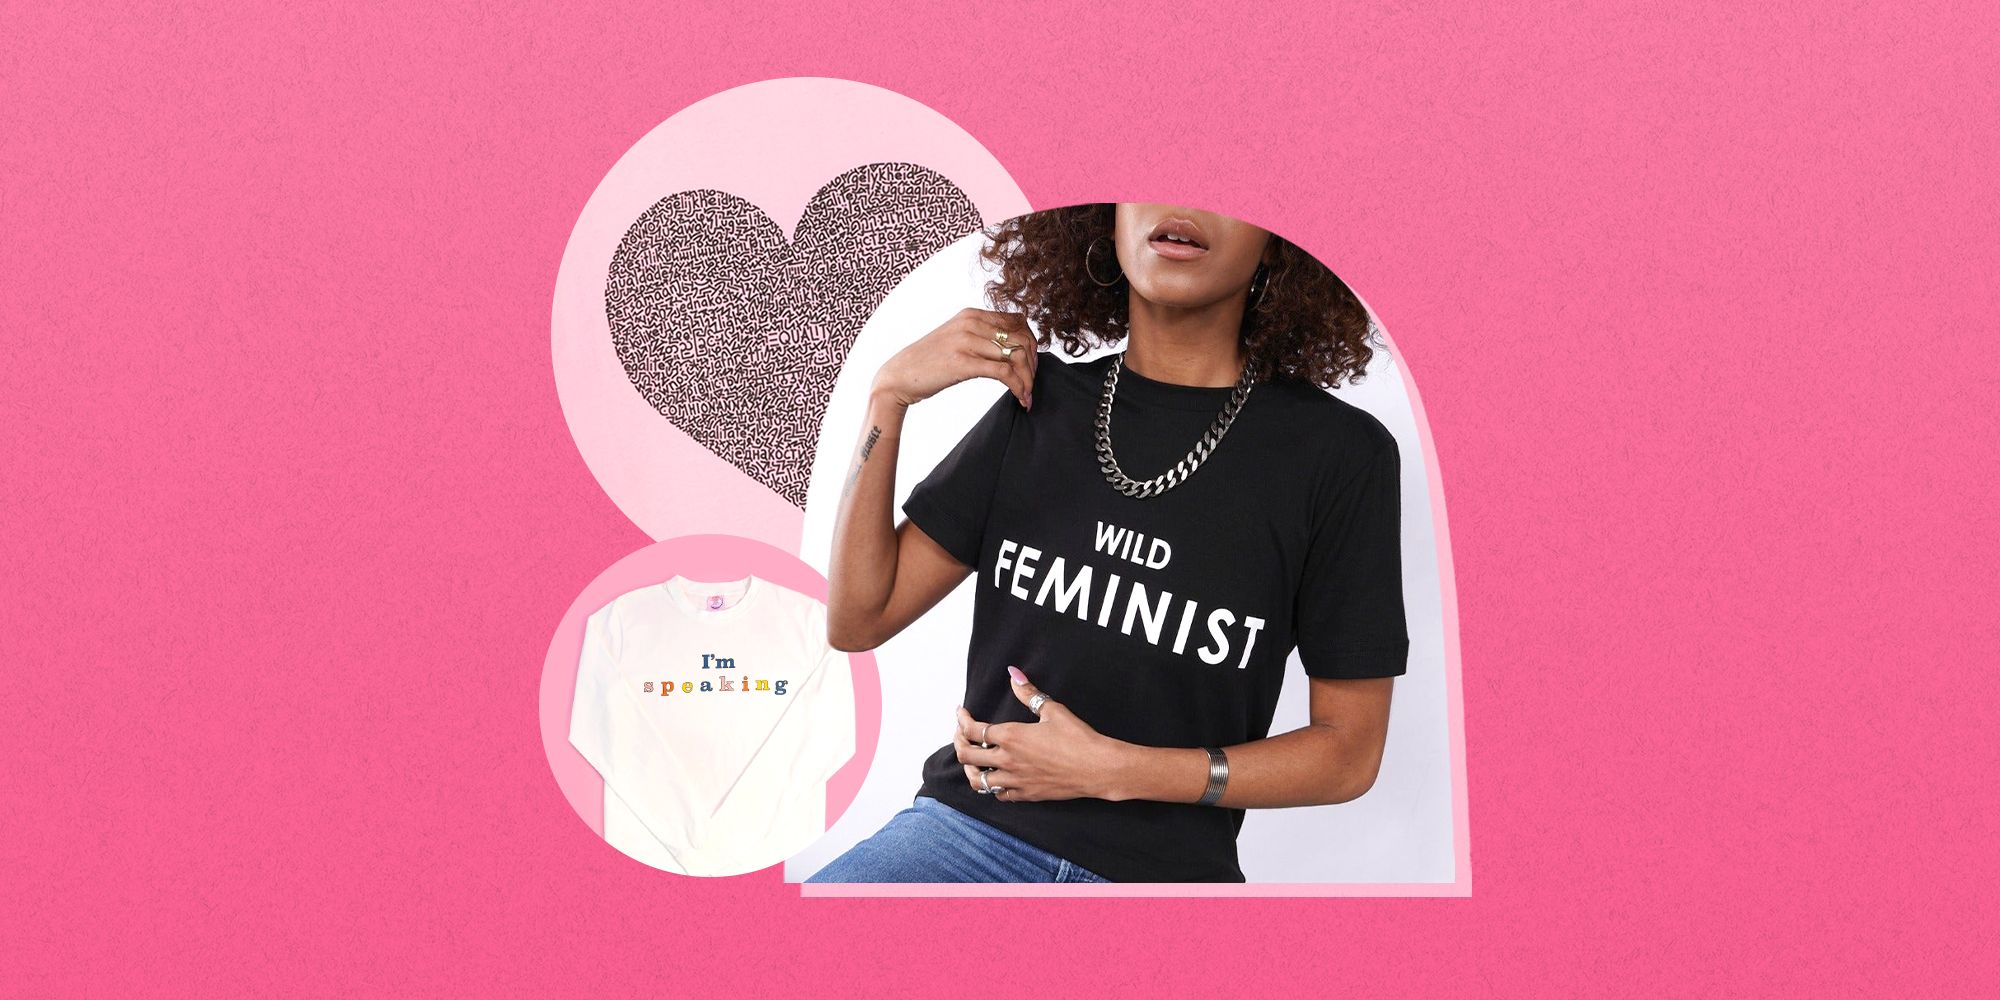 Feminist Shirt  Feminist Tshirt  Feminism Gift  Feminist T-Shirt  Activist Shirt  Activism Tees  Gift for Feminist  Statement Tee